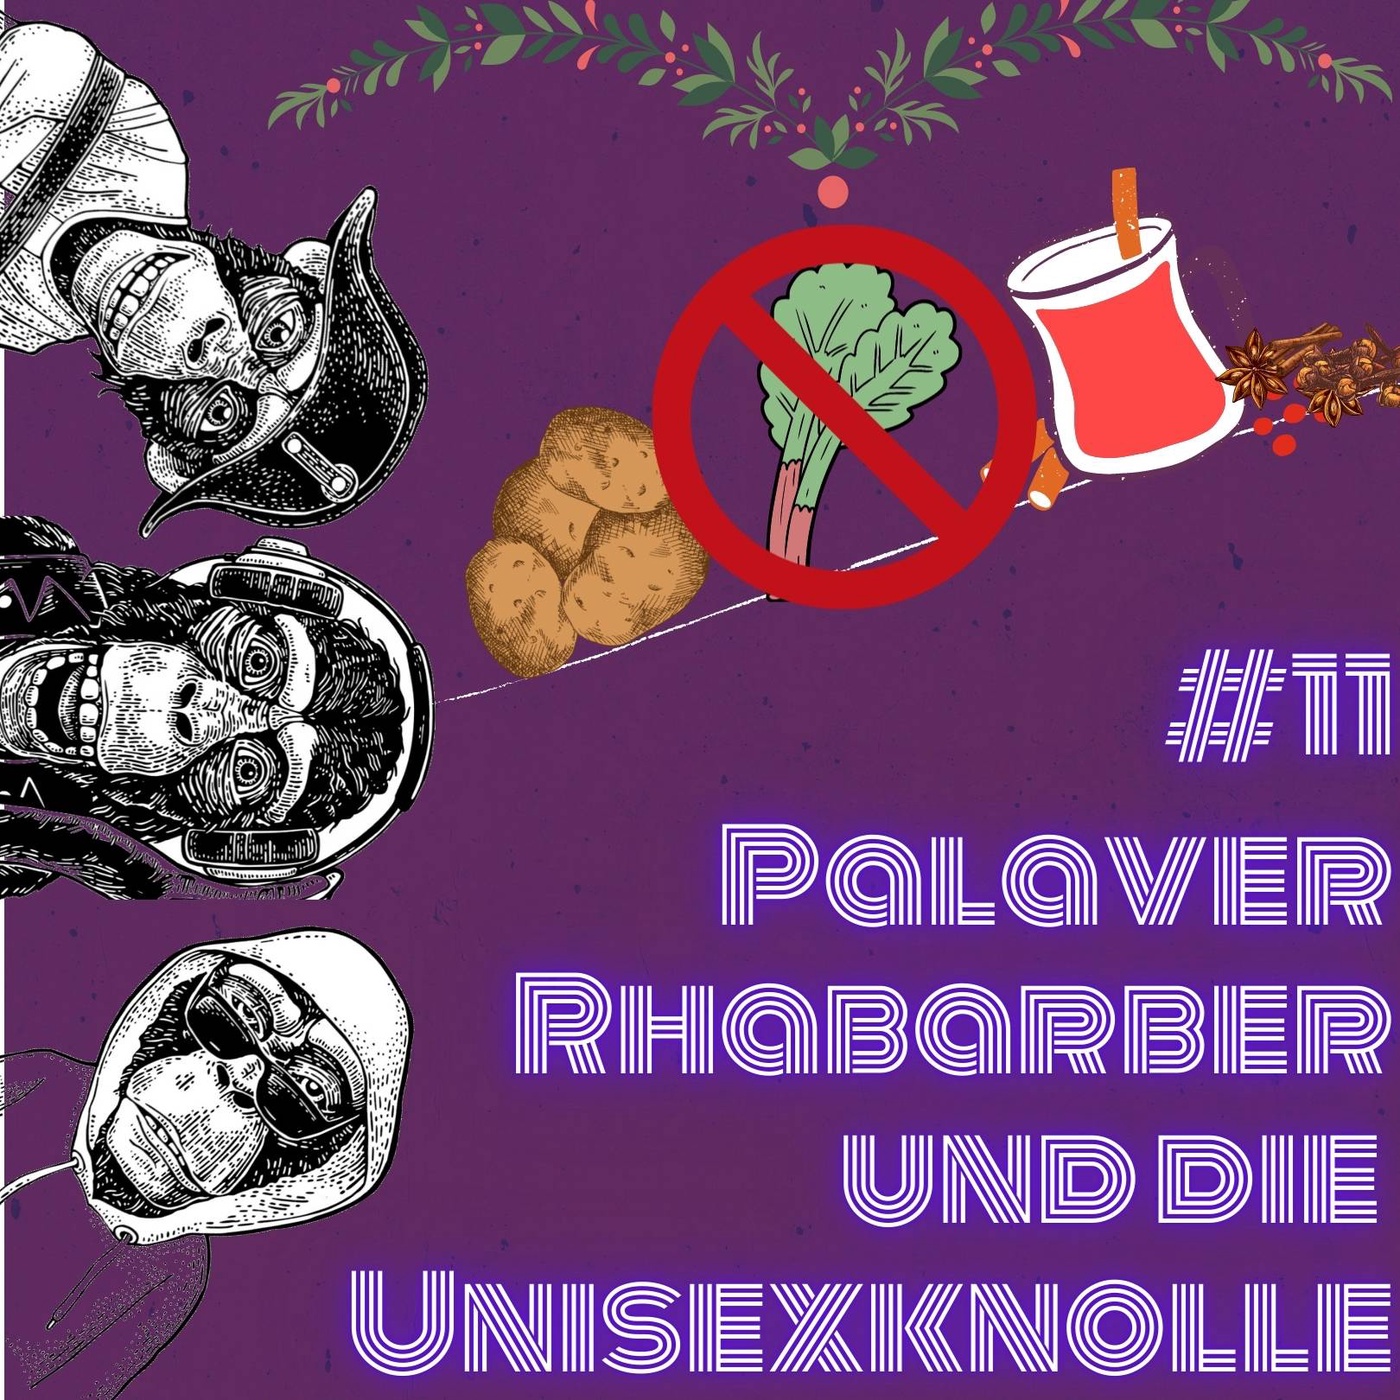 #11 Palaver Rhabarber und die Unisexknolle